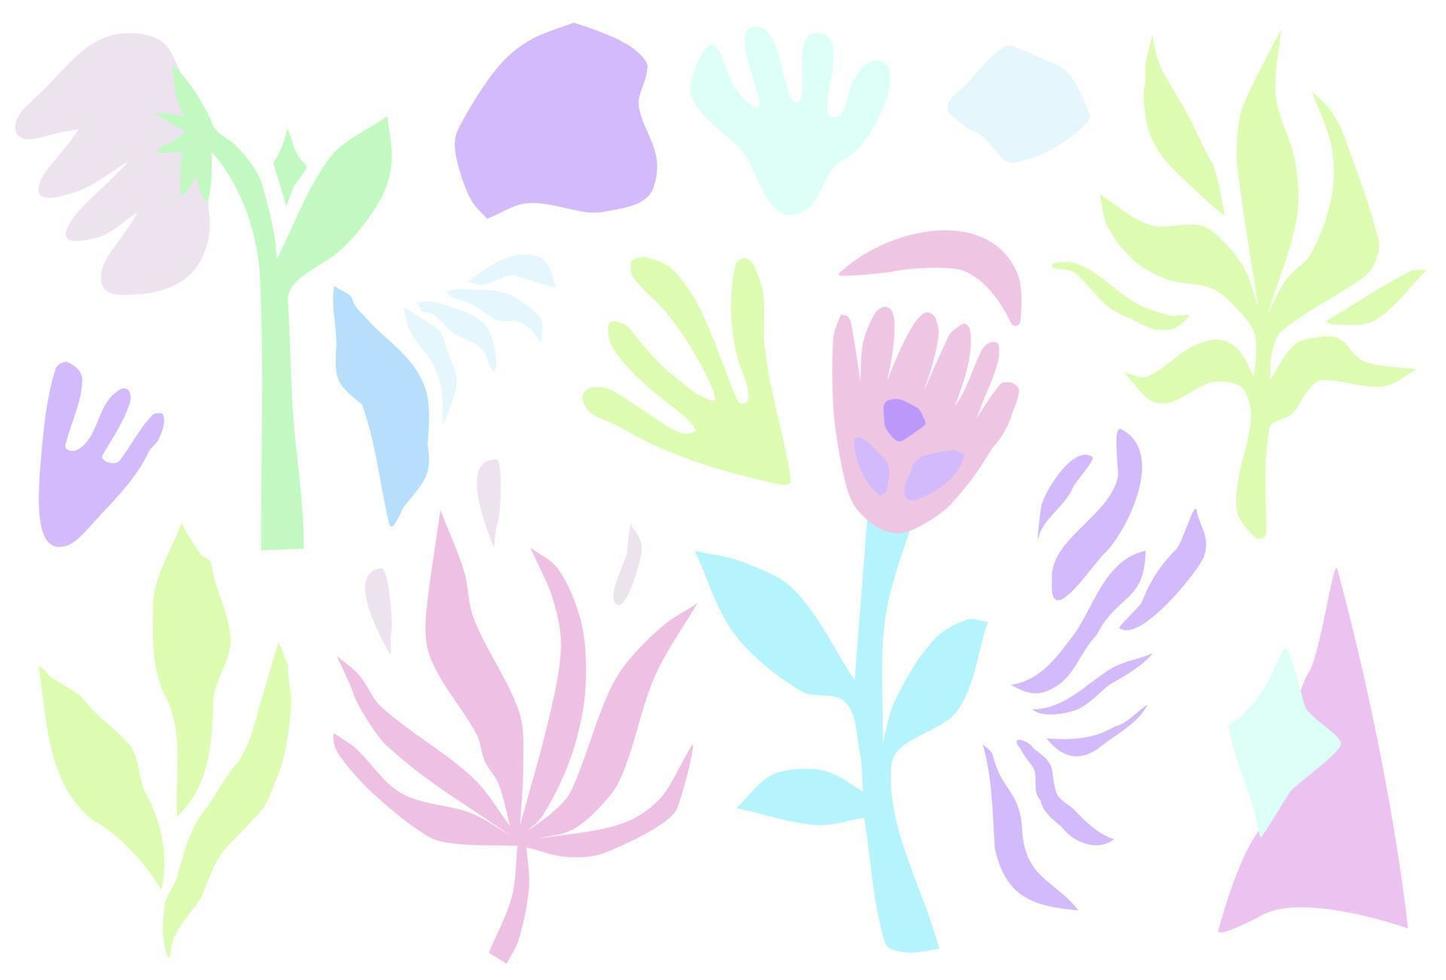 coleção abstrata elegante de plantas e flores em ilustração plana style.vector para composições de flores. vetor